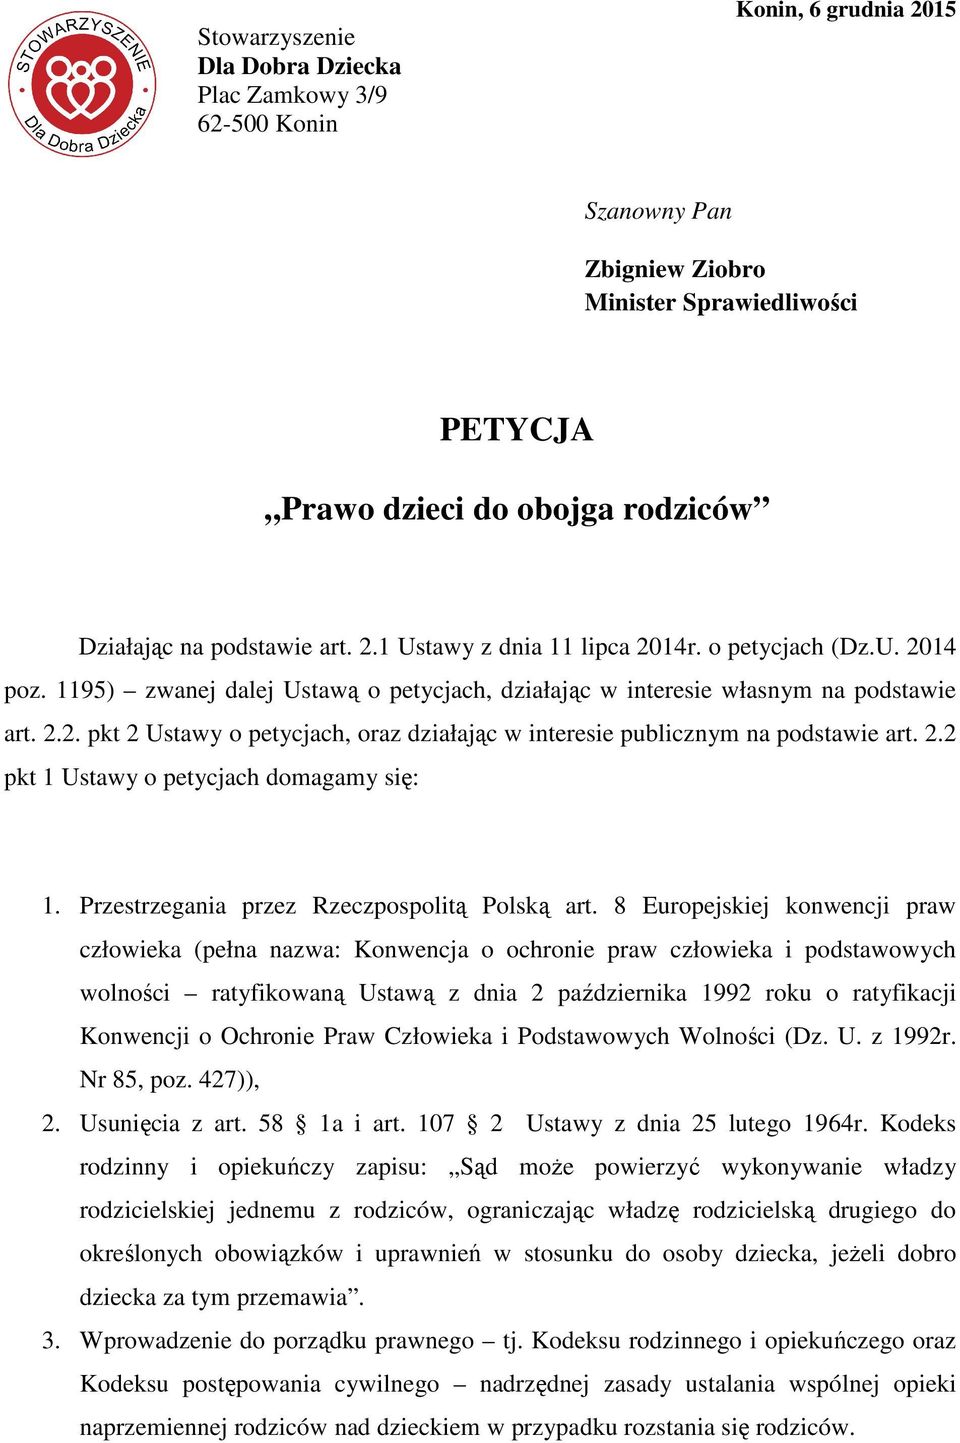 2.2 pkt 1 Ustawy o petycjach domagamy się: 1. Przestrzegania przez Rzeczpospolitą Polską art.